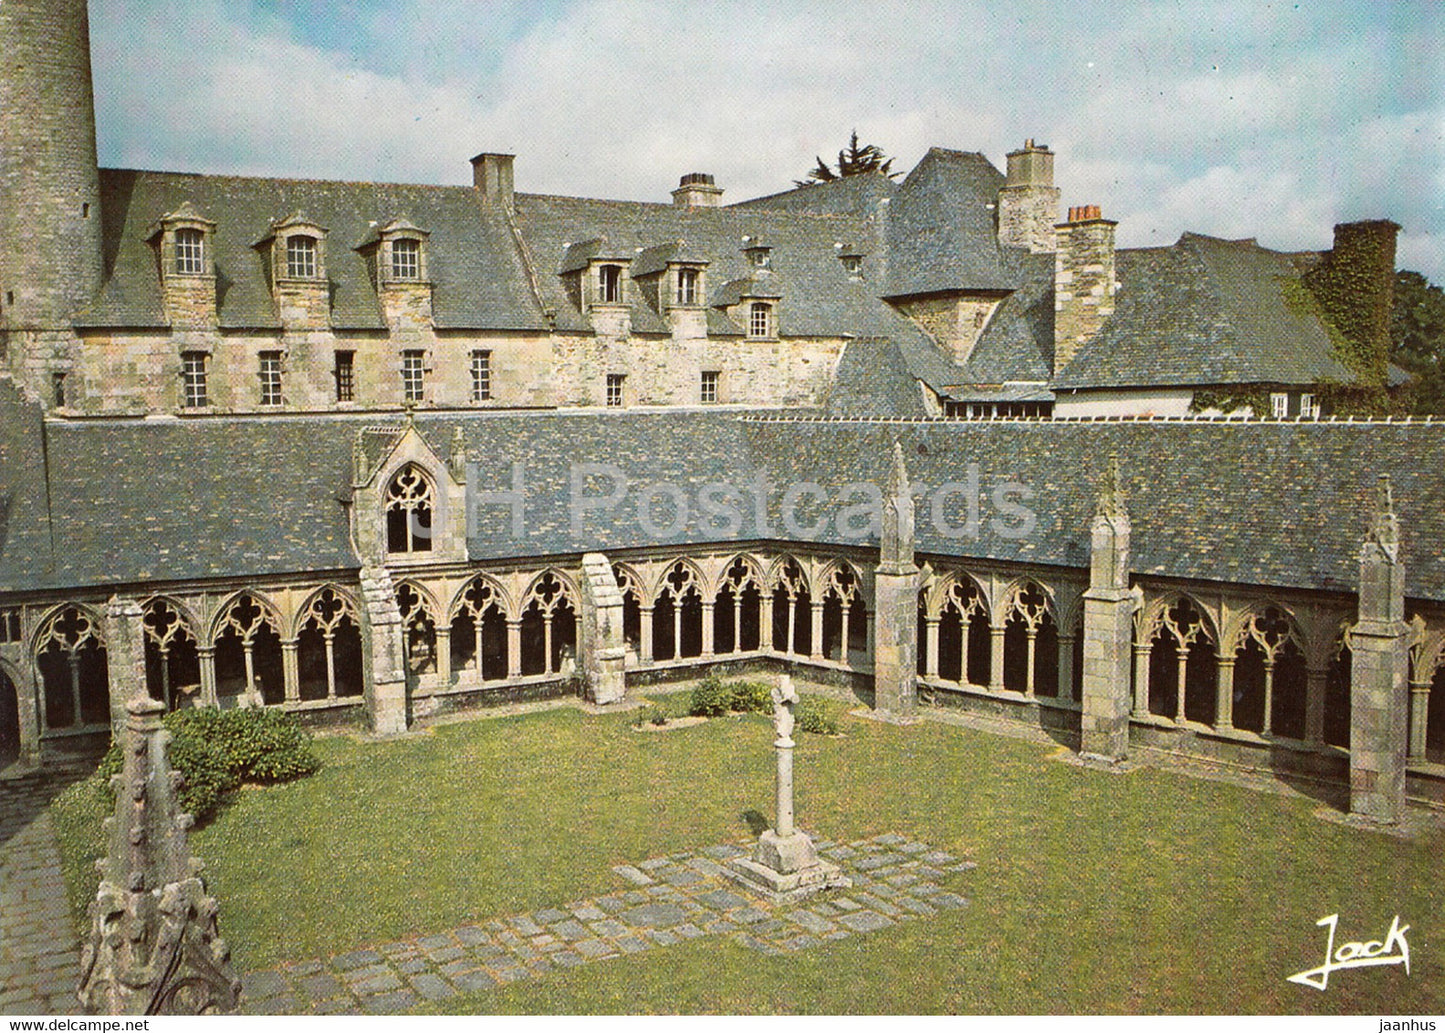 Treguier - Le Cloitre - Couleurs de Bretagne - cloister - 22220 - France - unused - JH Postcards